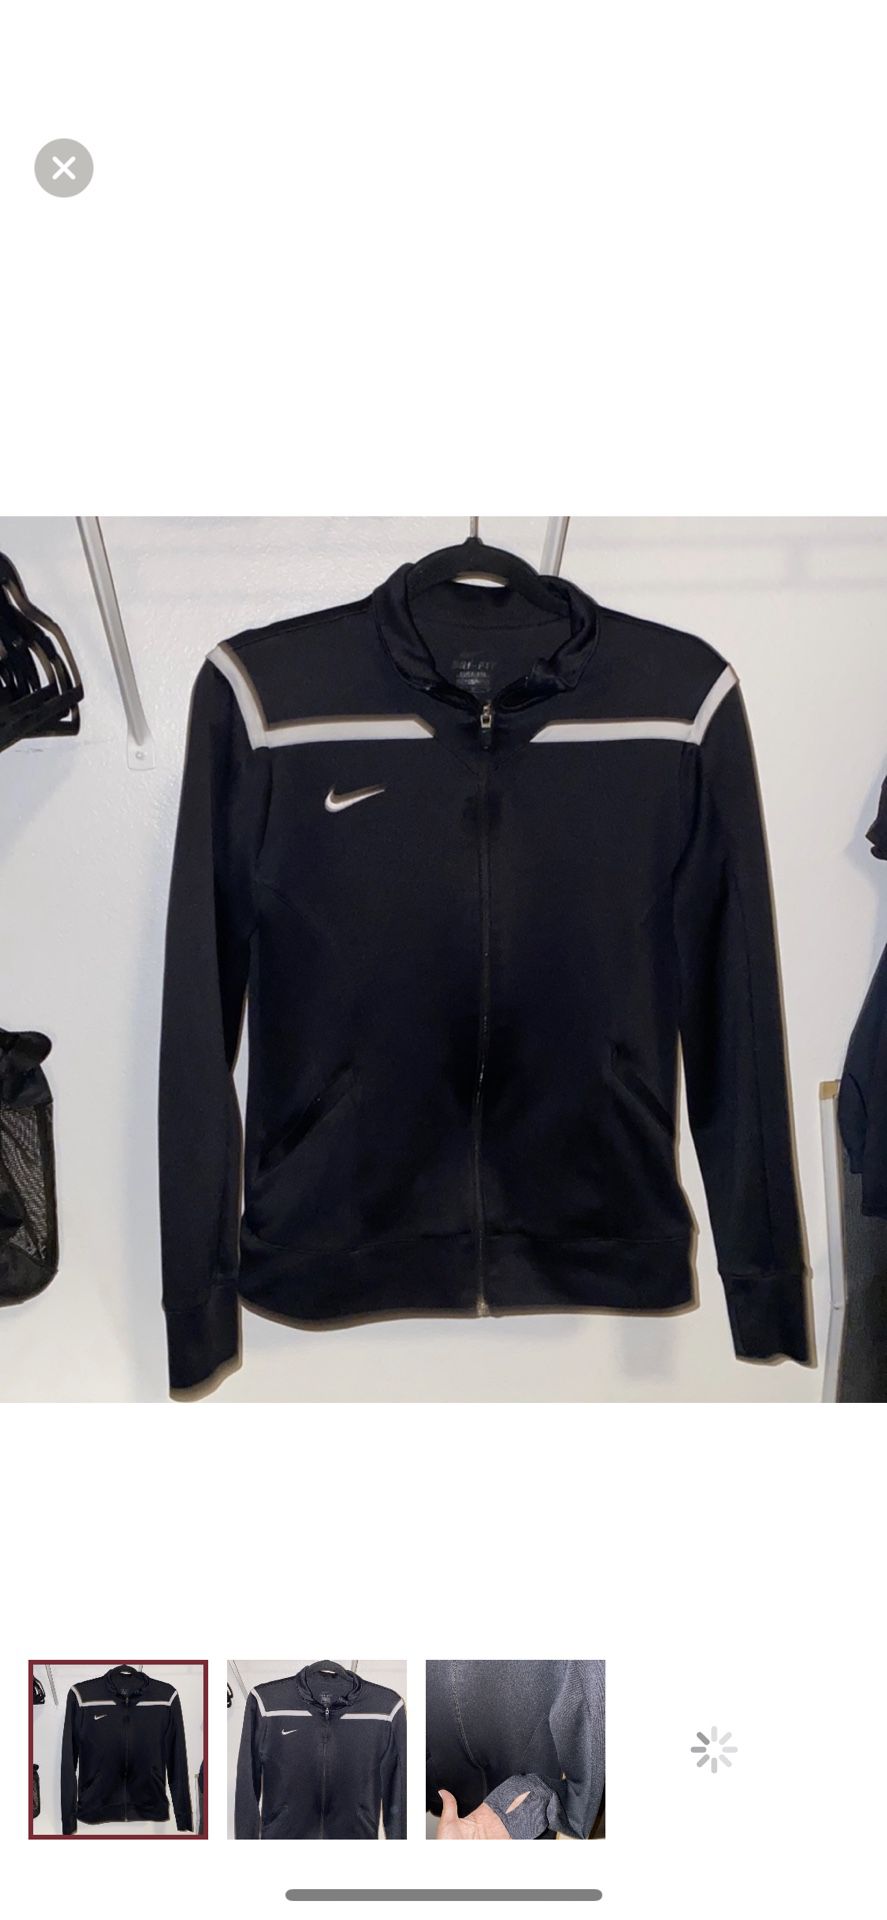 Nike Dri-Fit Woman’s Jacket